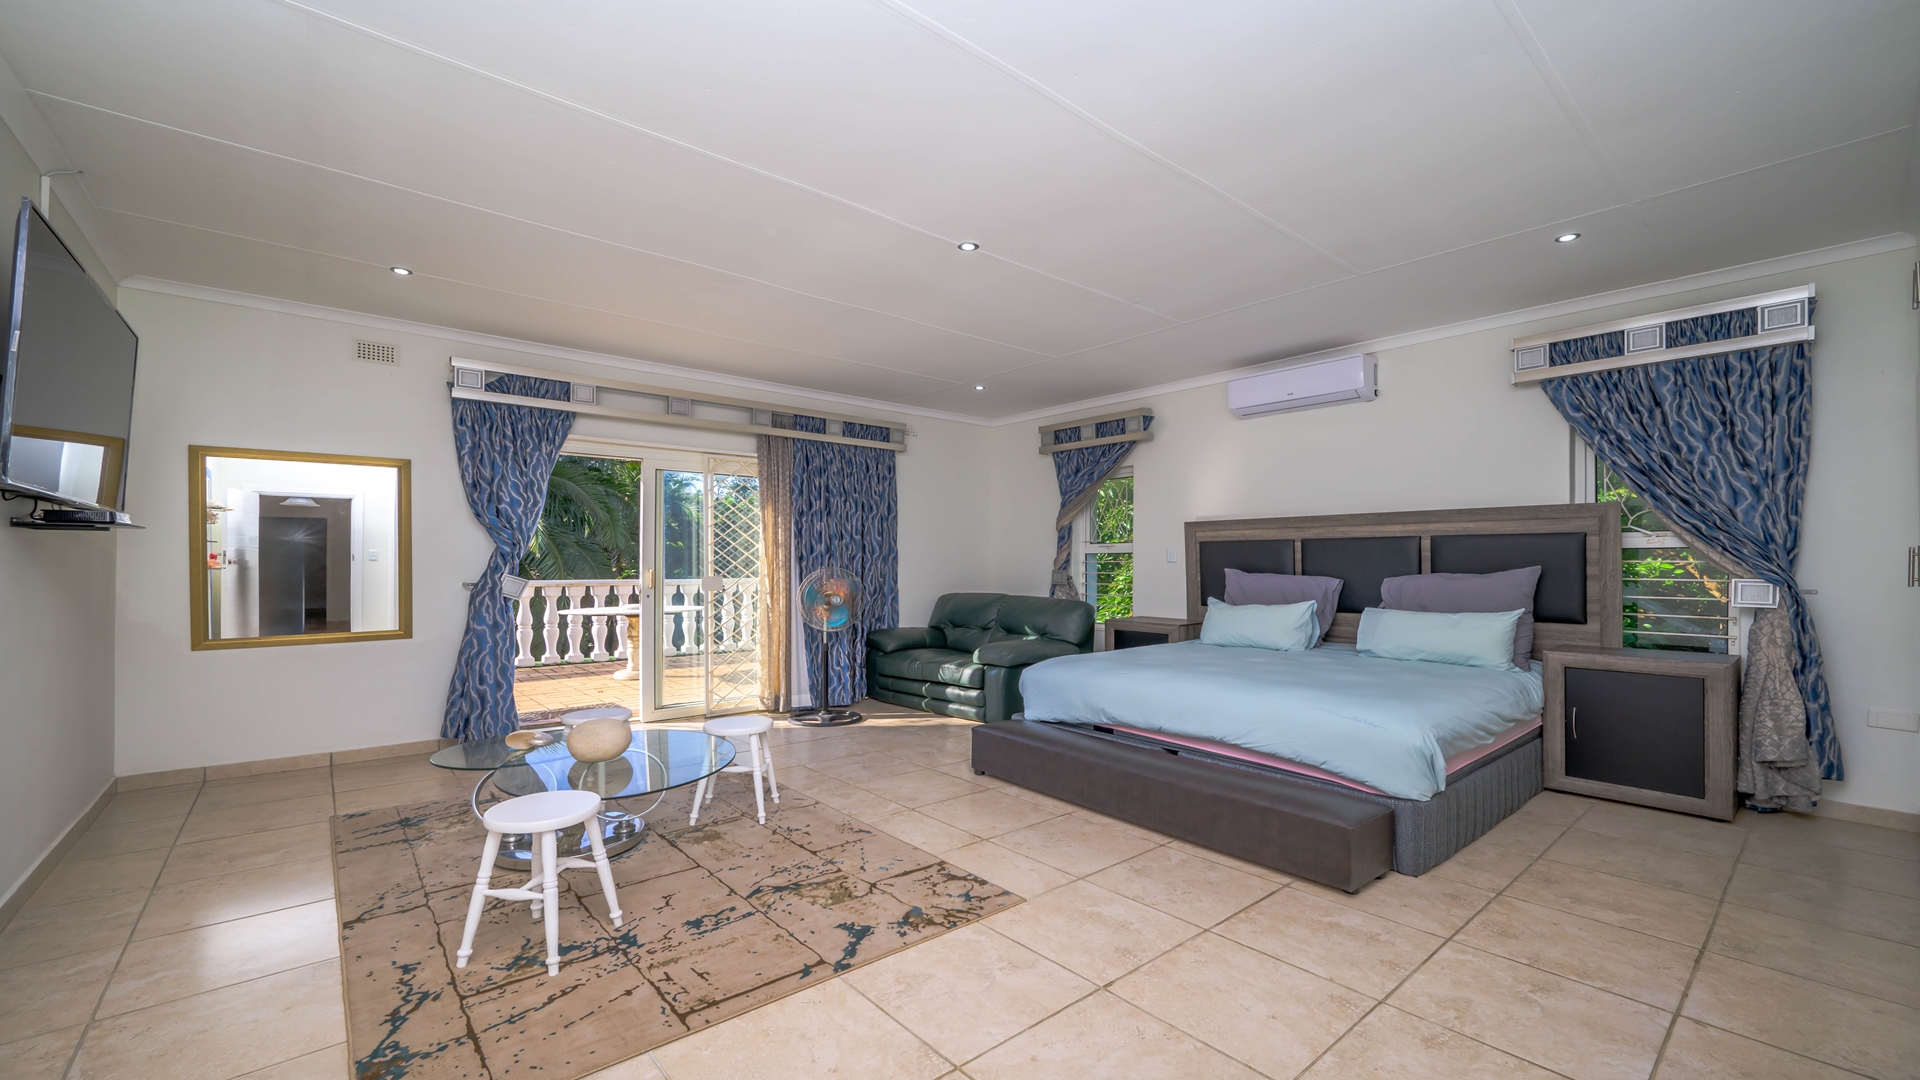 9 Bedroom Property for Sale in Port Edward KwaZulu-Natal